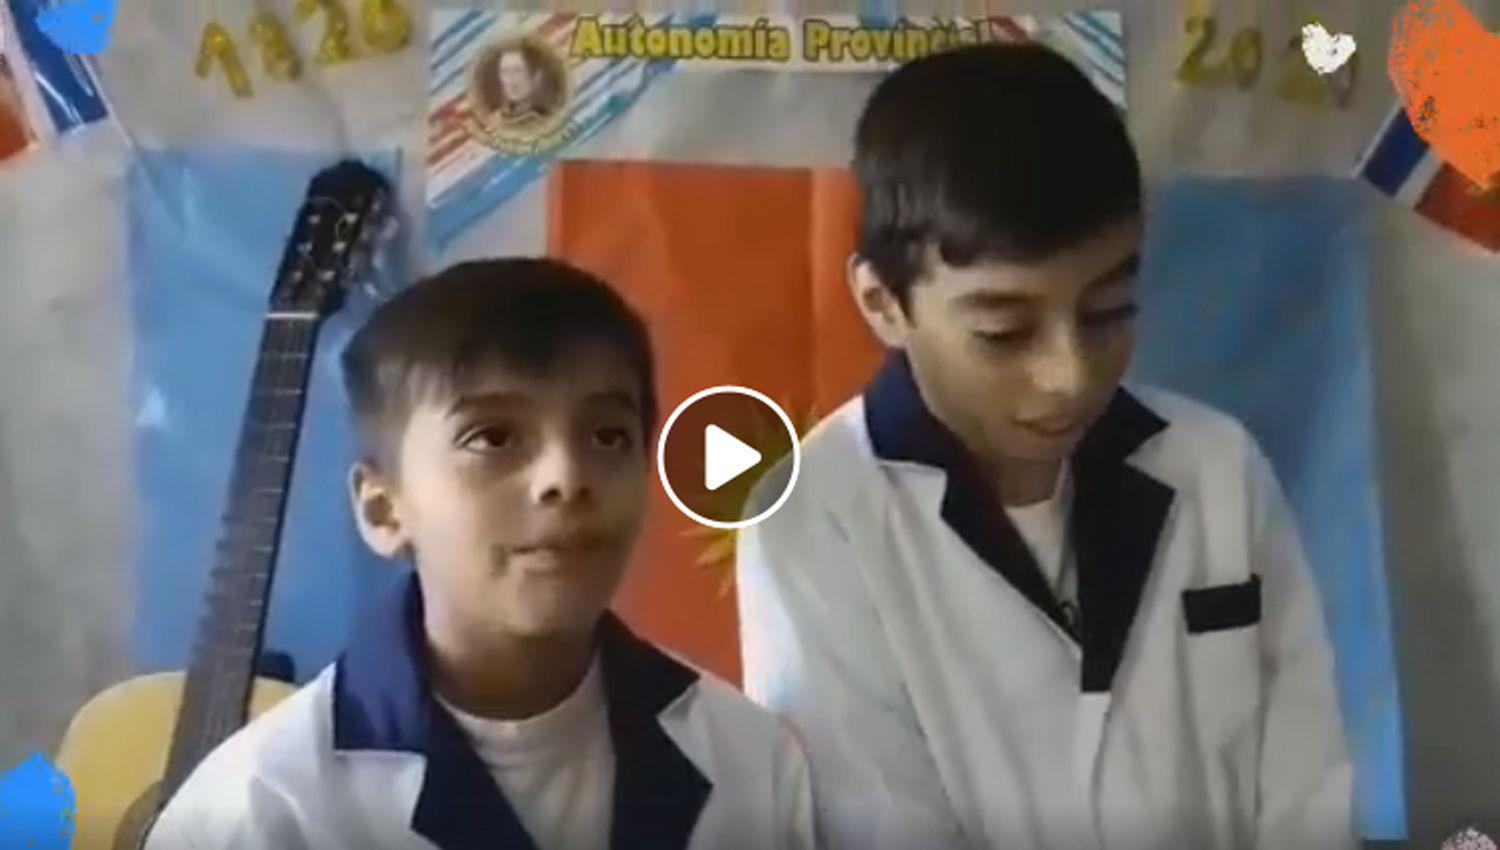 VIDEO  Emotivo acto de una maestra con sus dos hijos por los 200 antildeos de la Autonomiacutea